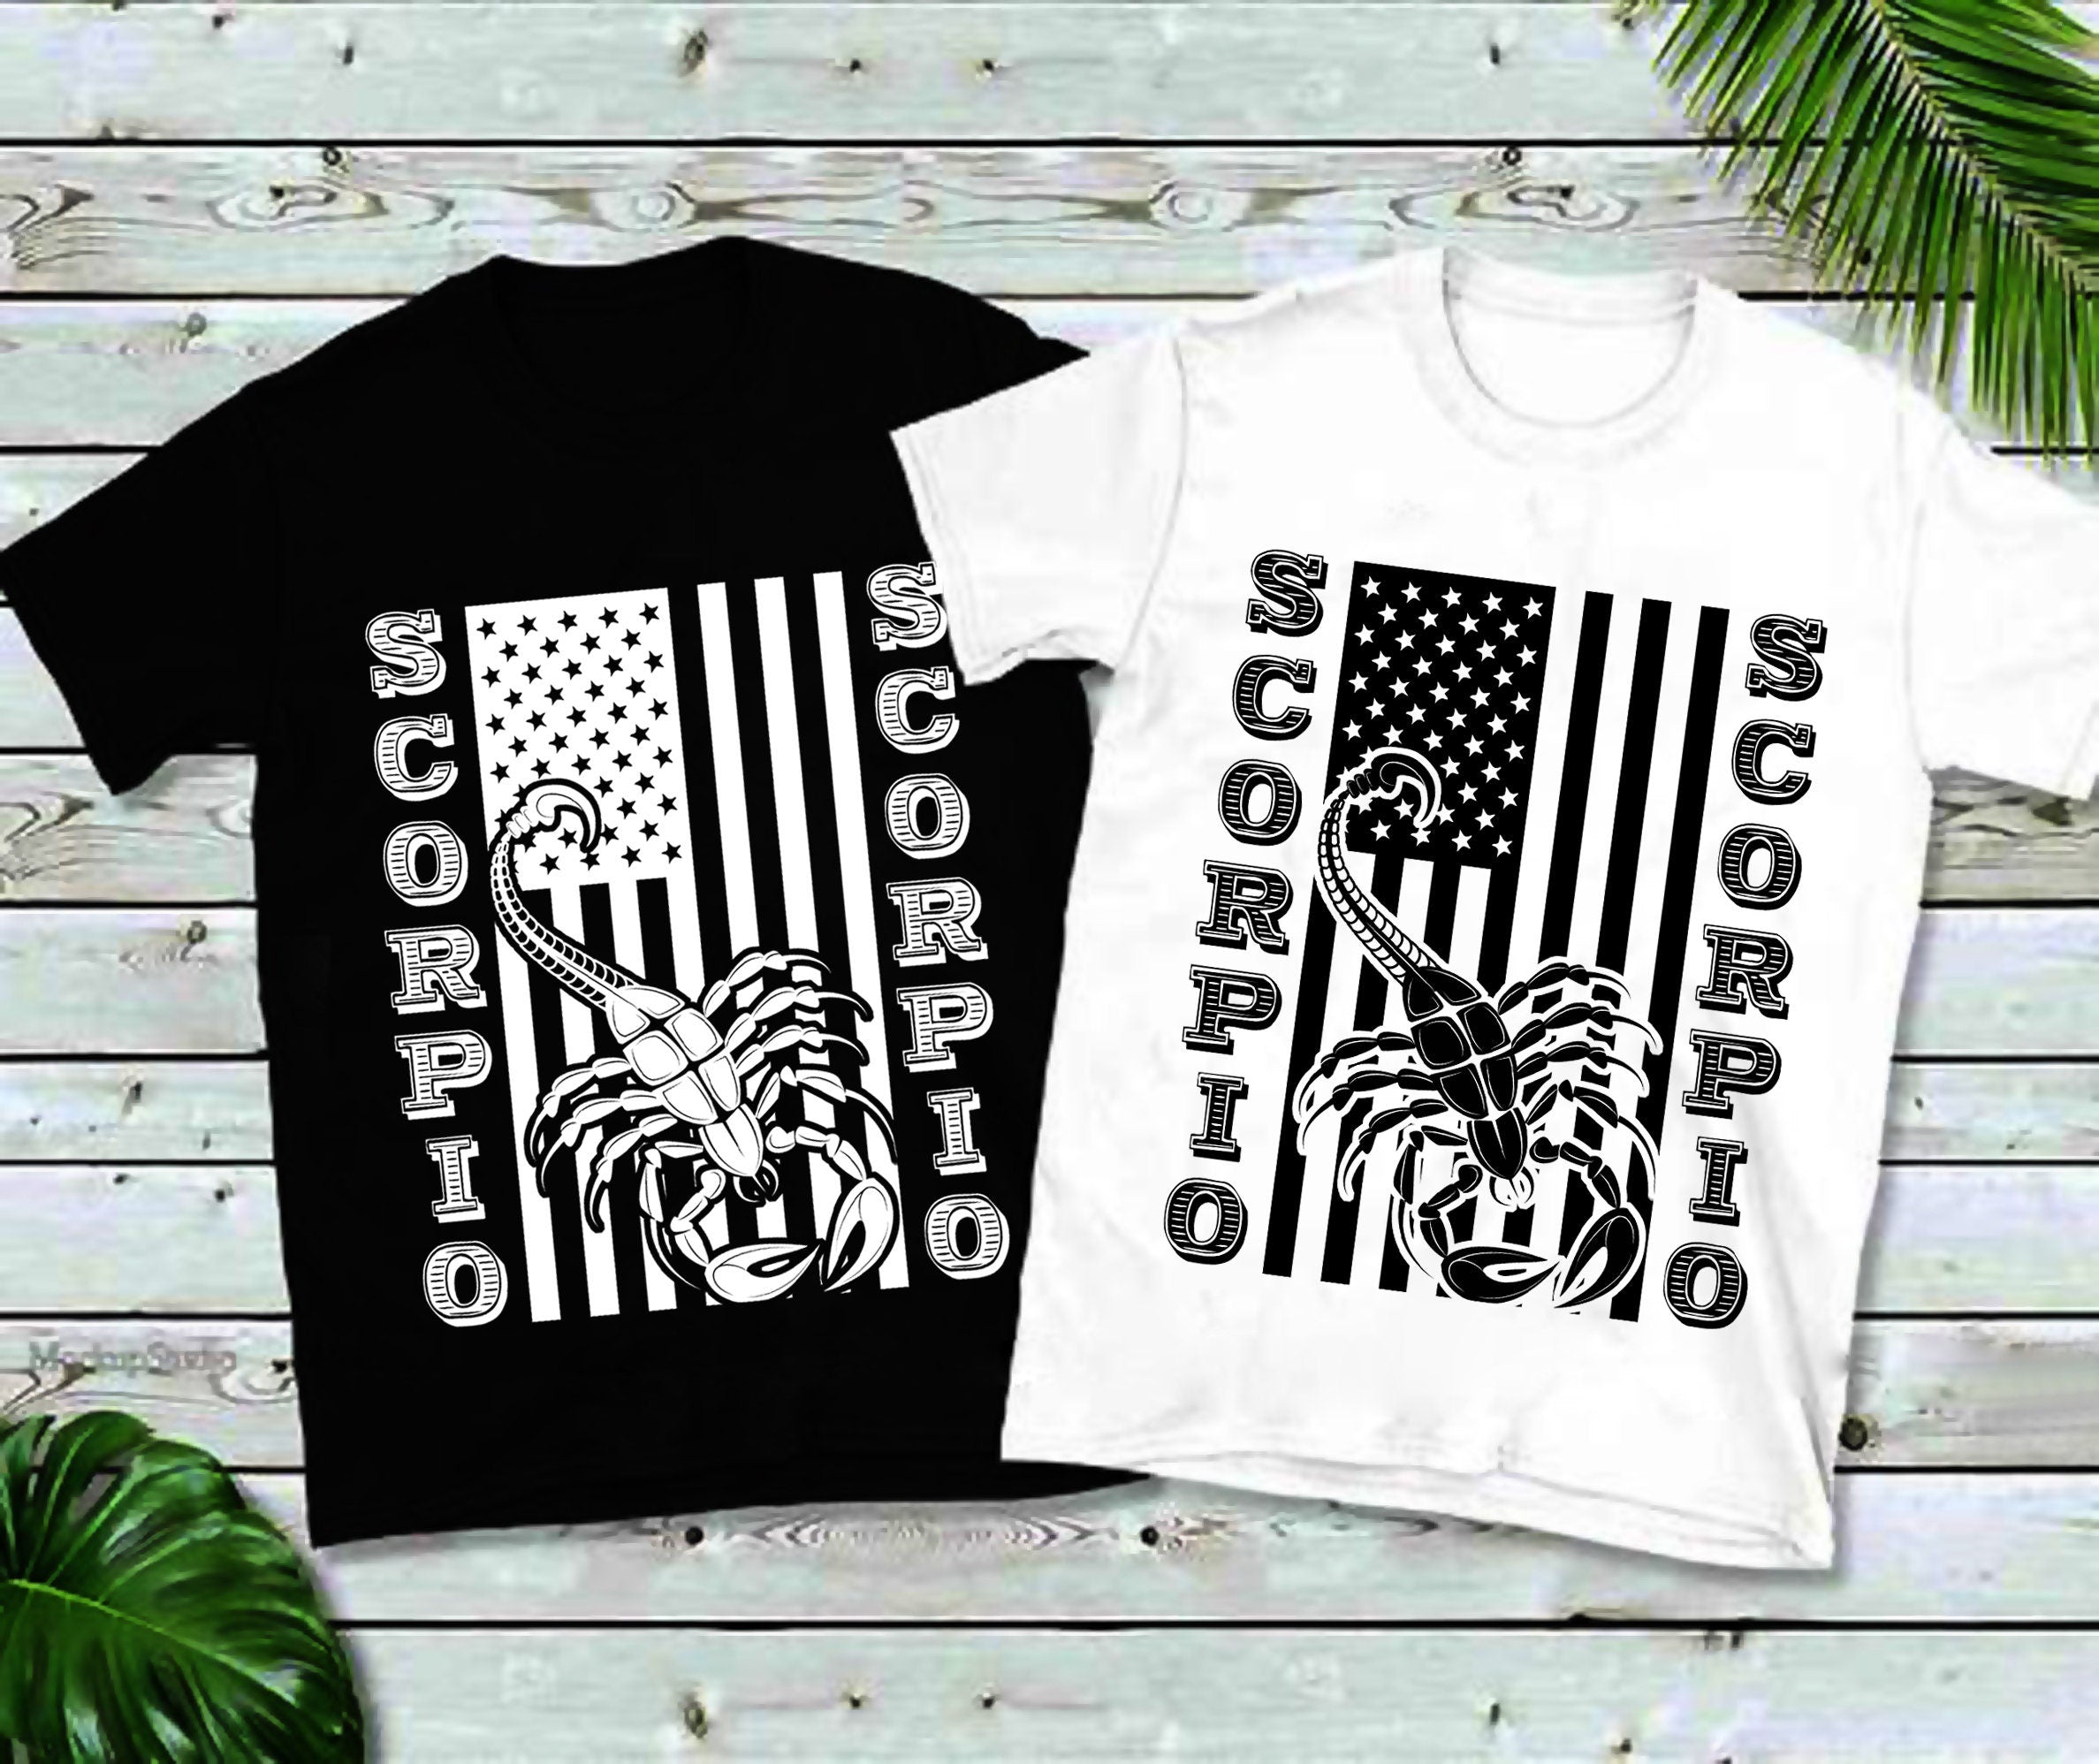 वृश्चिक | अमेरिकी ध्वज टी-शर्ट, वृश्चिक, वृश्चिक राशि, वृश्चिक उपहार, राशि वृश्चिक, वृश्चिक, वृश्चिक के लिए उपहार -plusminusco.com